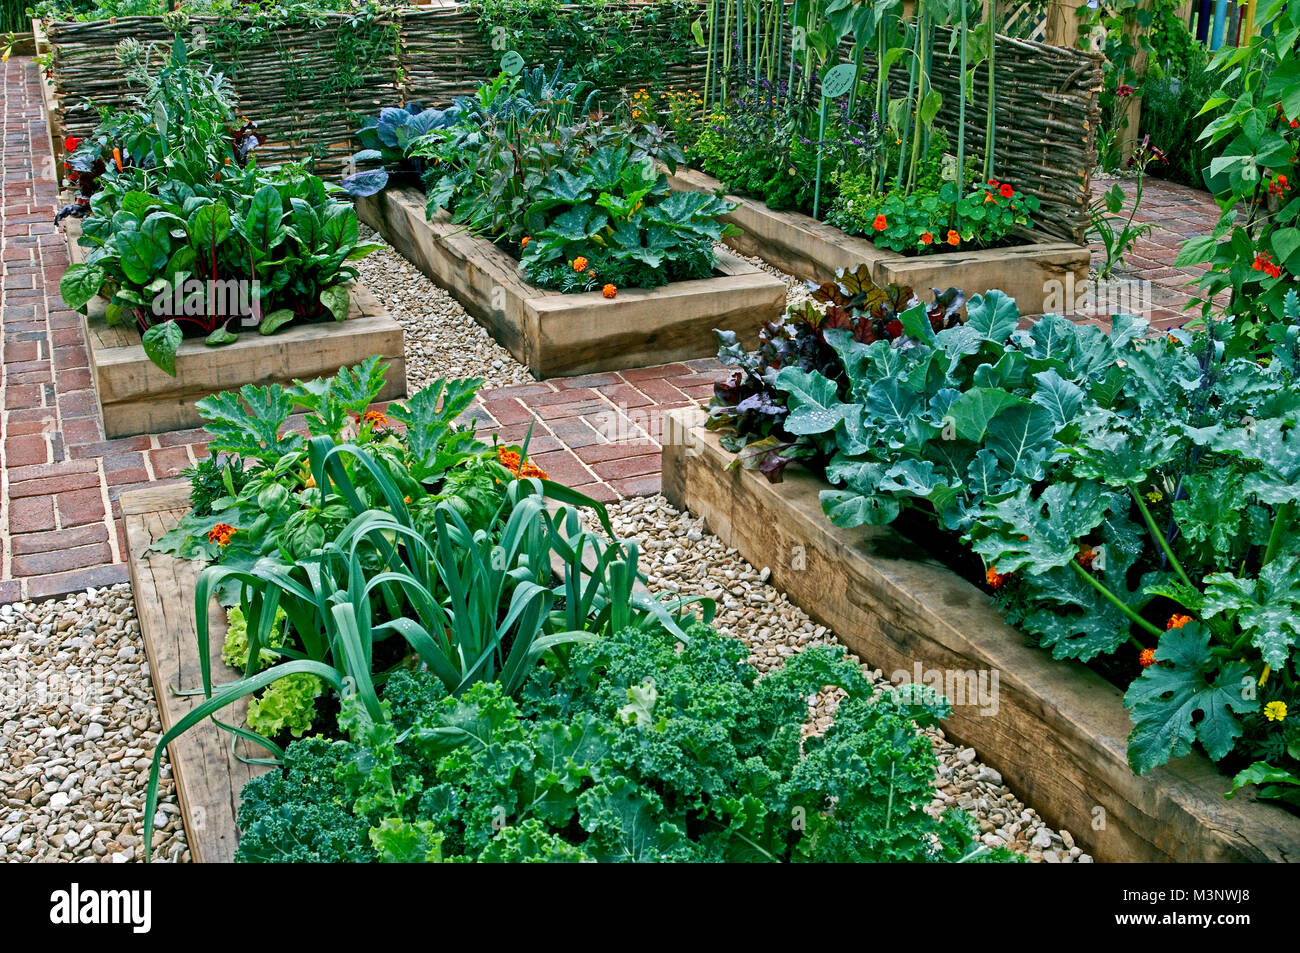 Jardin de légumes comestibles plantées dans des contenants literie soulevé Banque D'Images